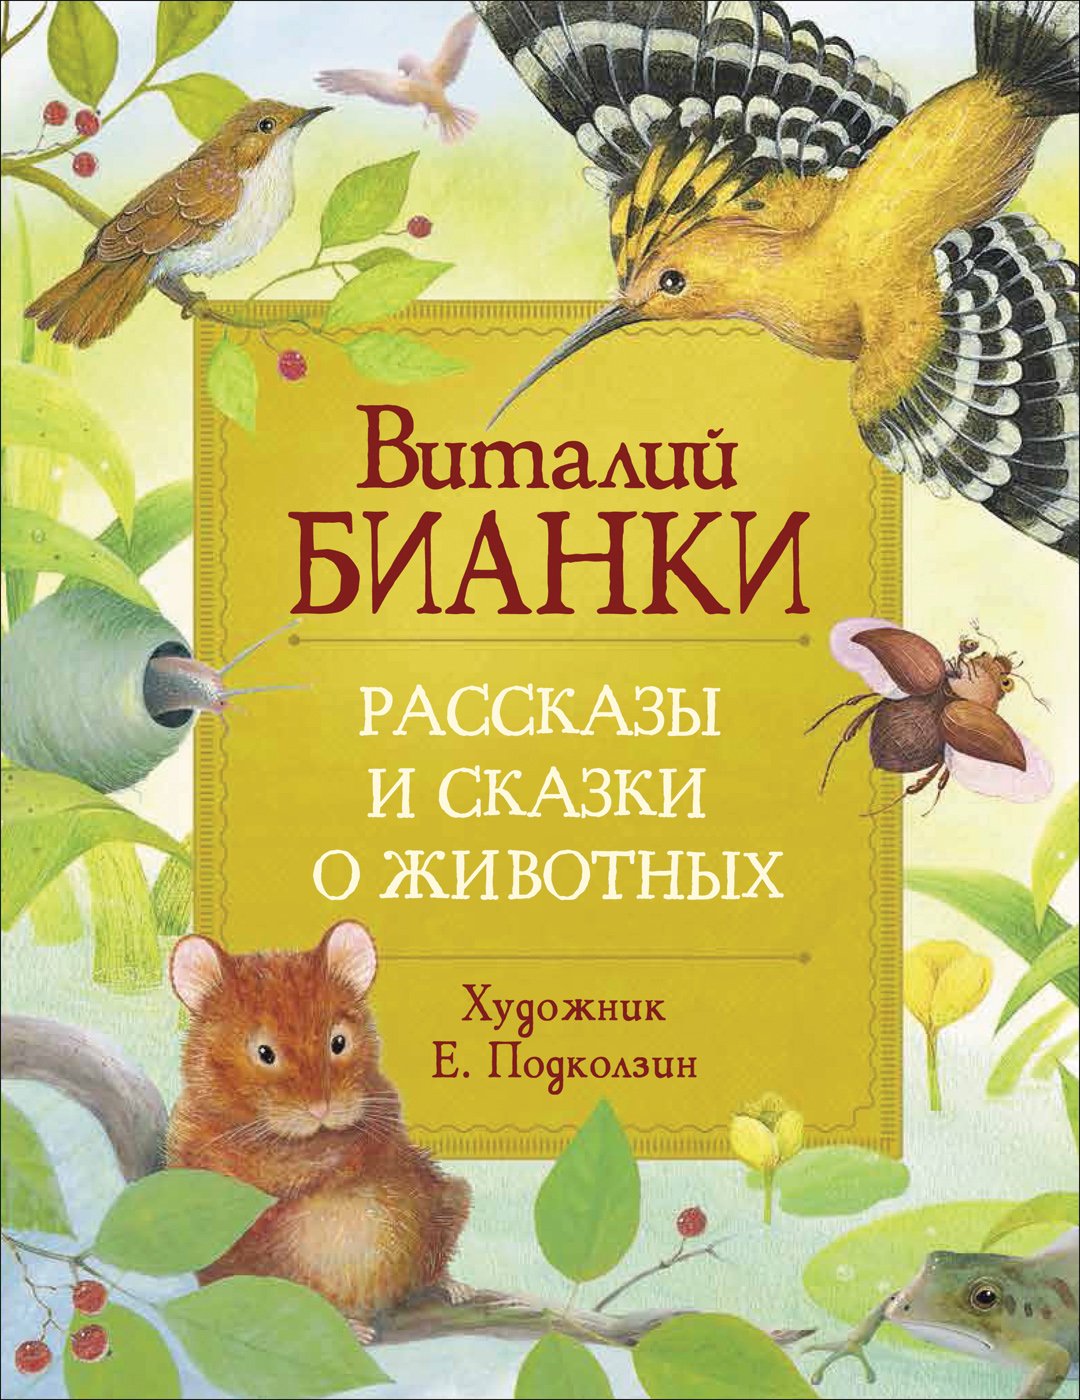 Бианки Виталий Валентинович - Рассказы и сказки о животных (Любимые детские писатели)